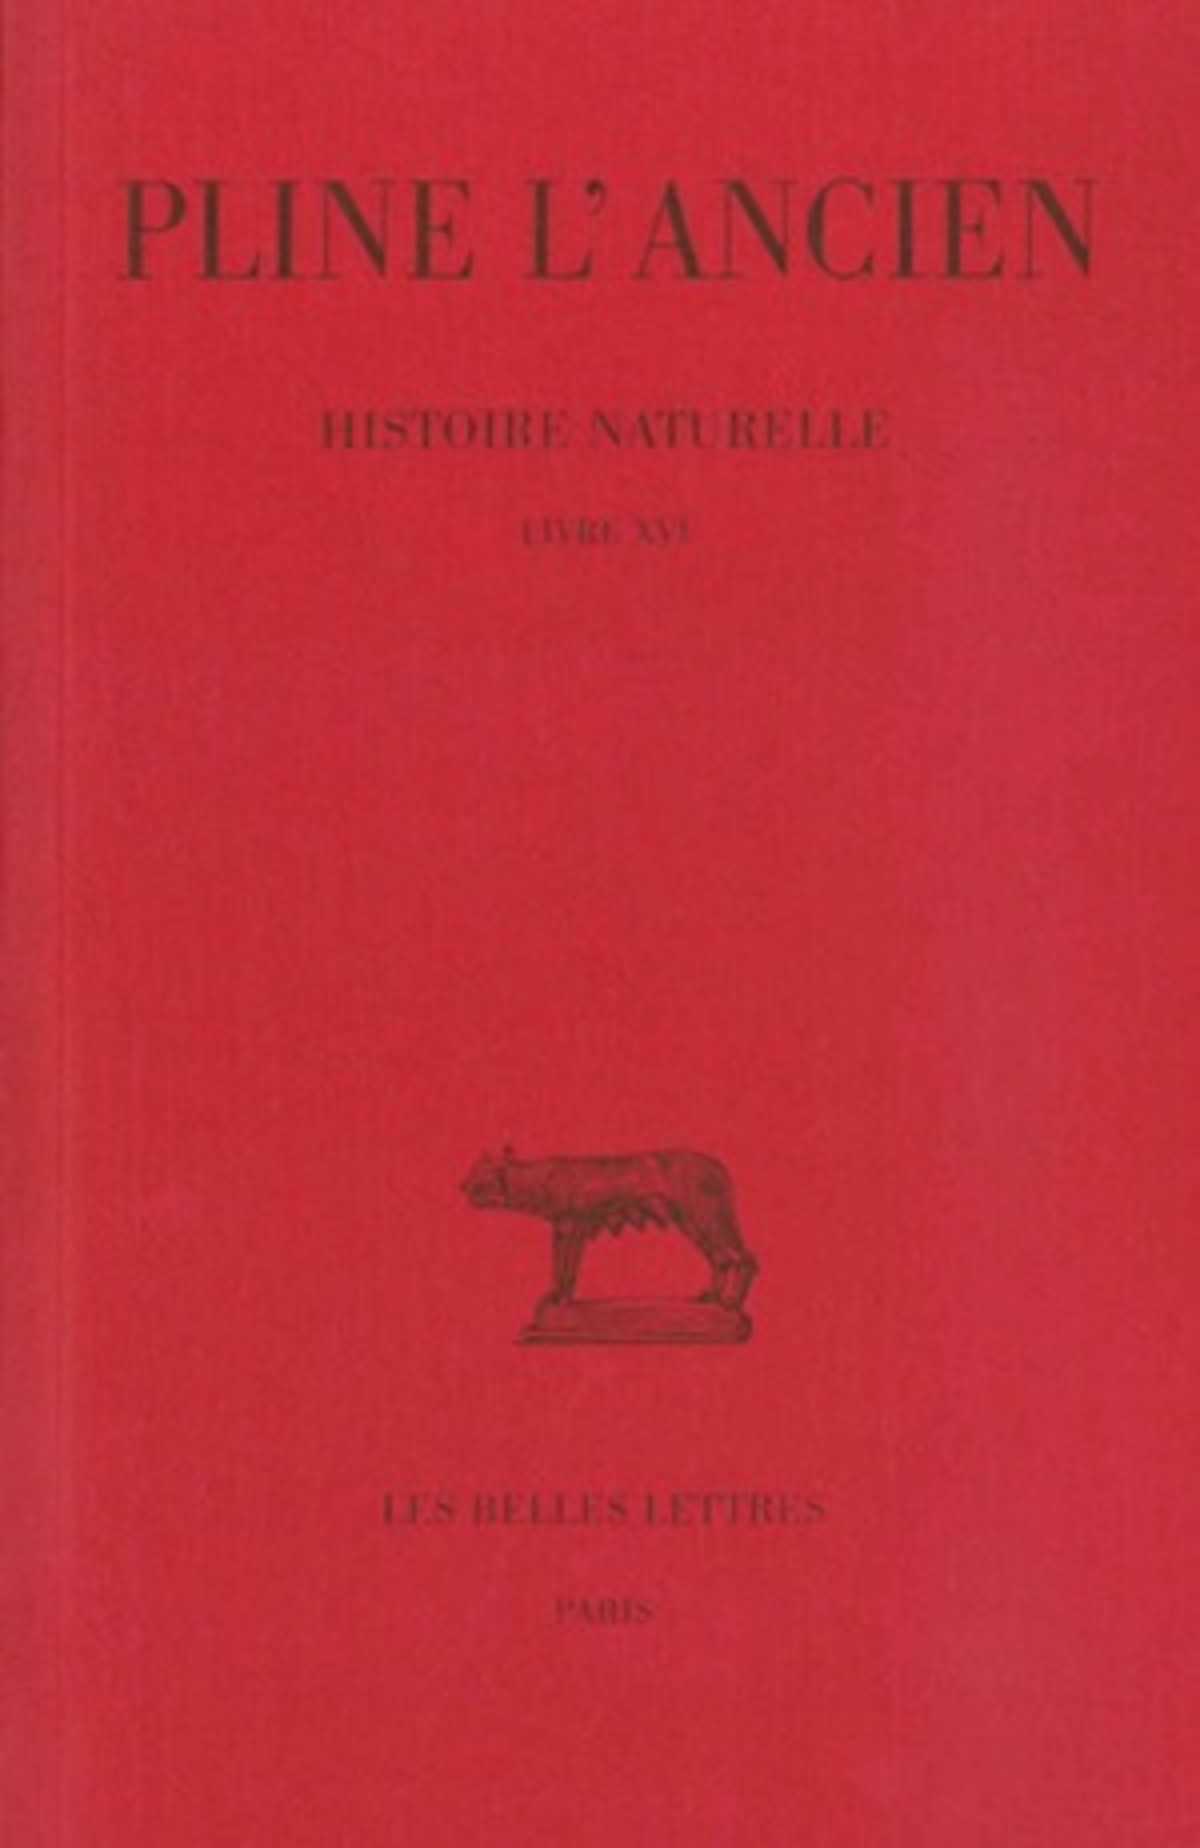 Histoire naturelle. Livre XVI